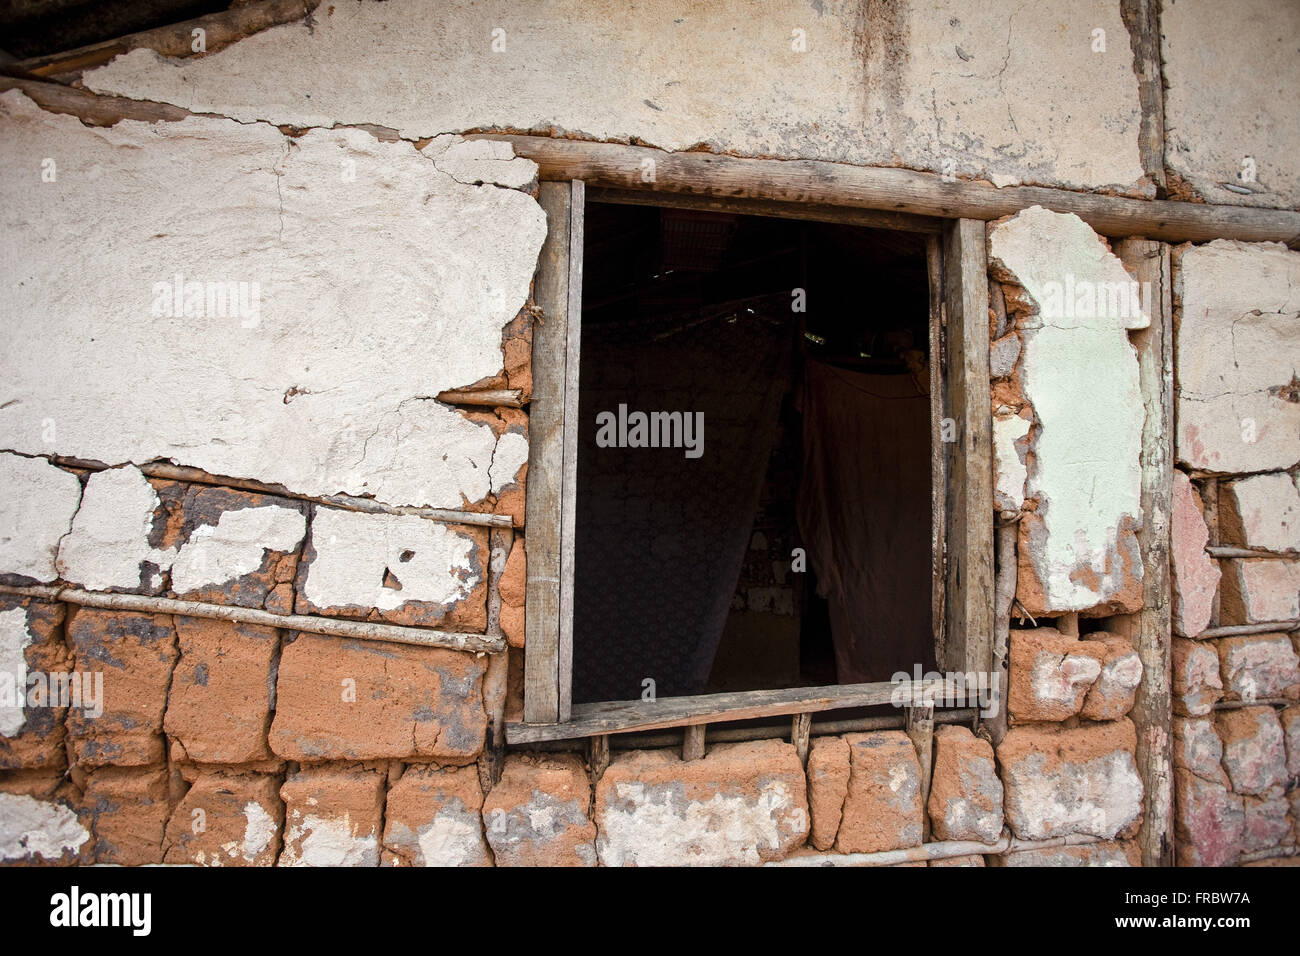 Dettaglio della parete e la casa del graticcio daub e finestra nel distretto Commandatuba Foto Stock